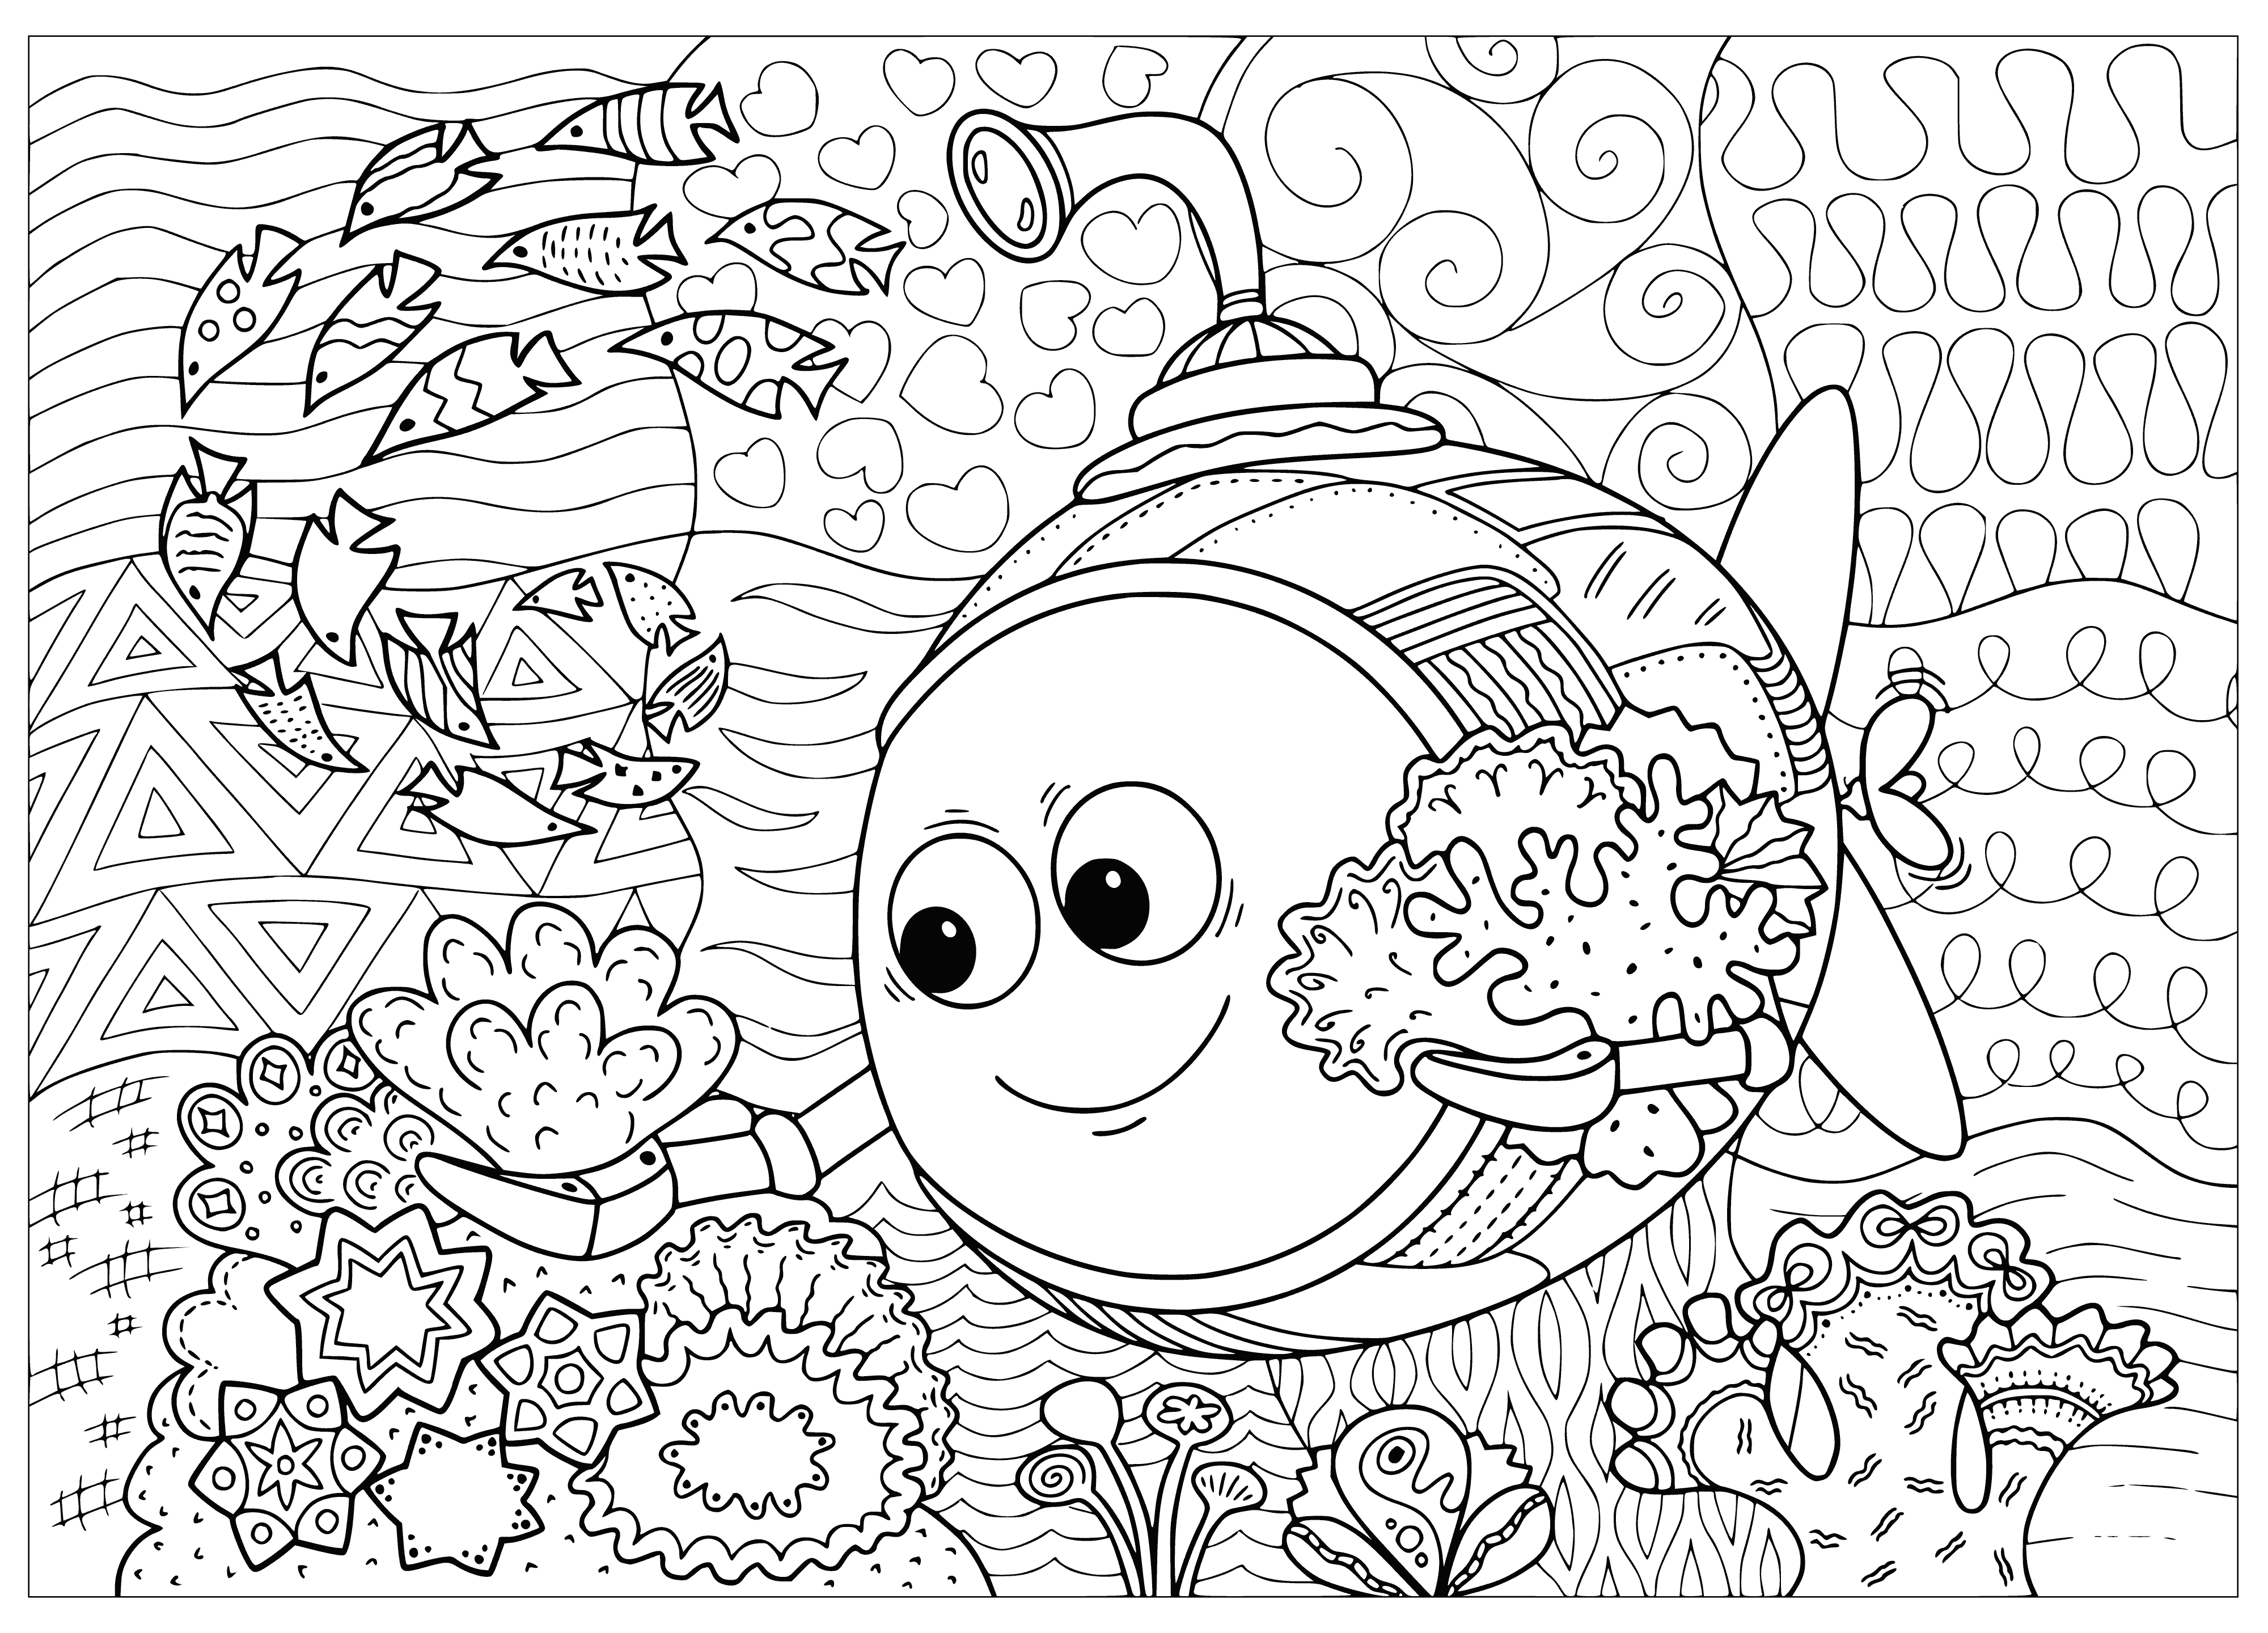 Bathyscaphe explora um recife de coral página para colorir